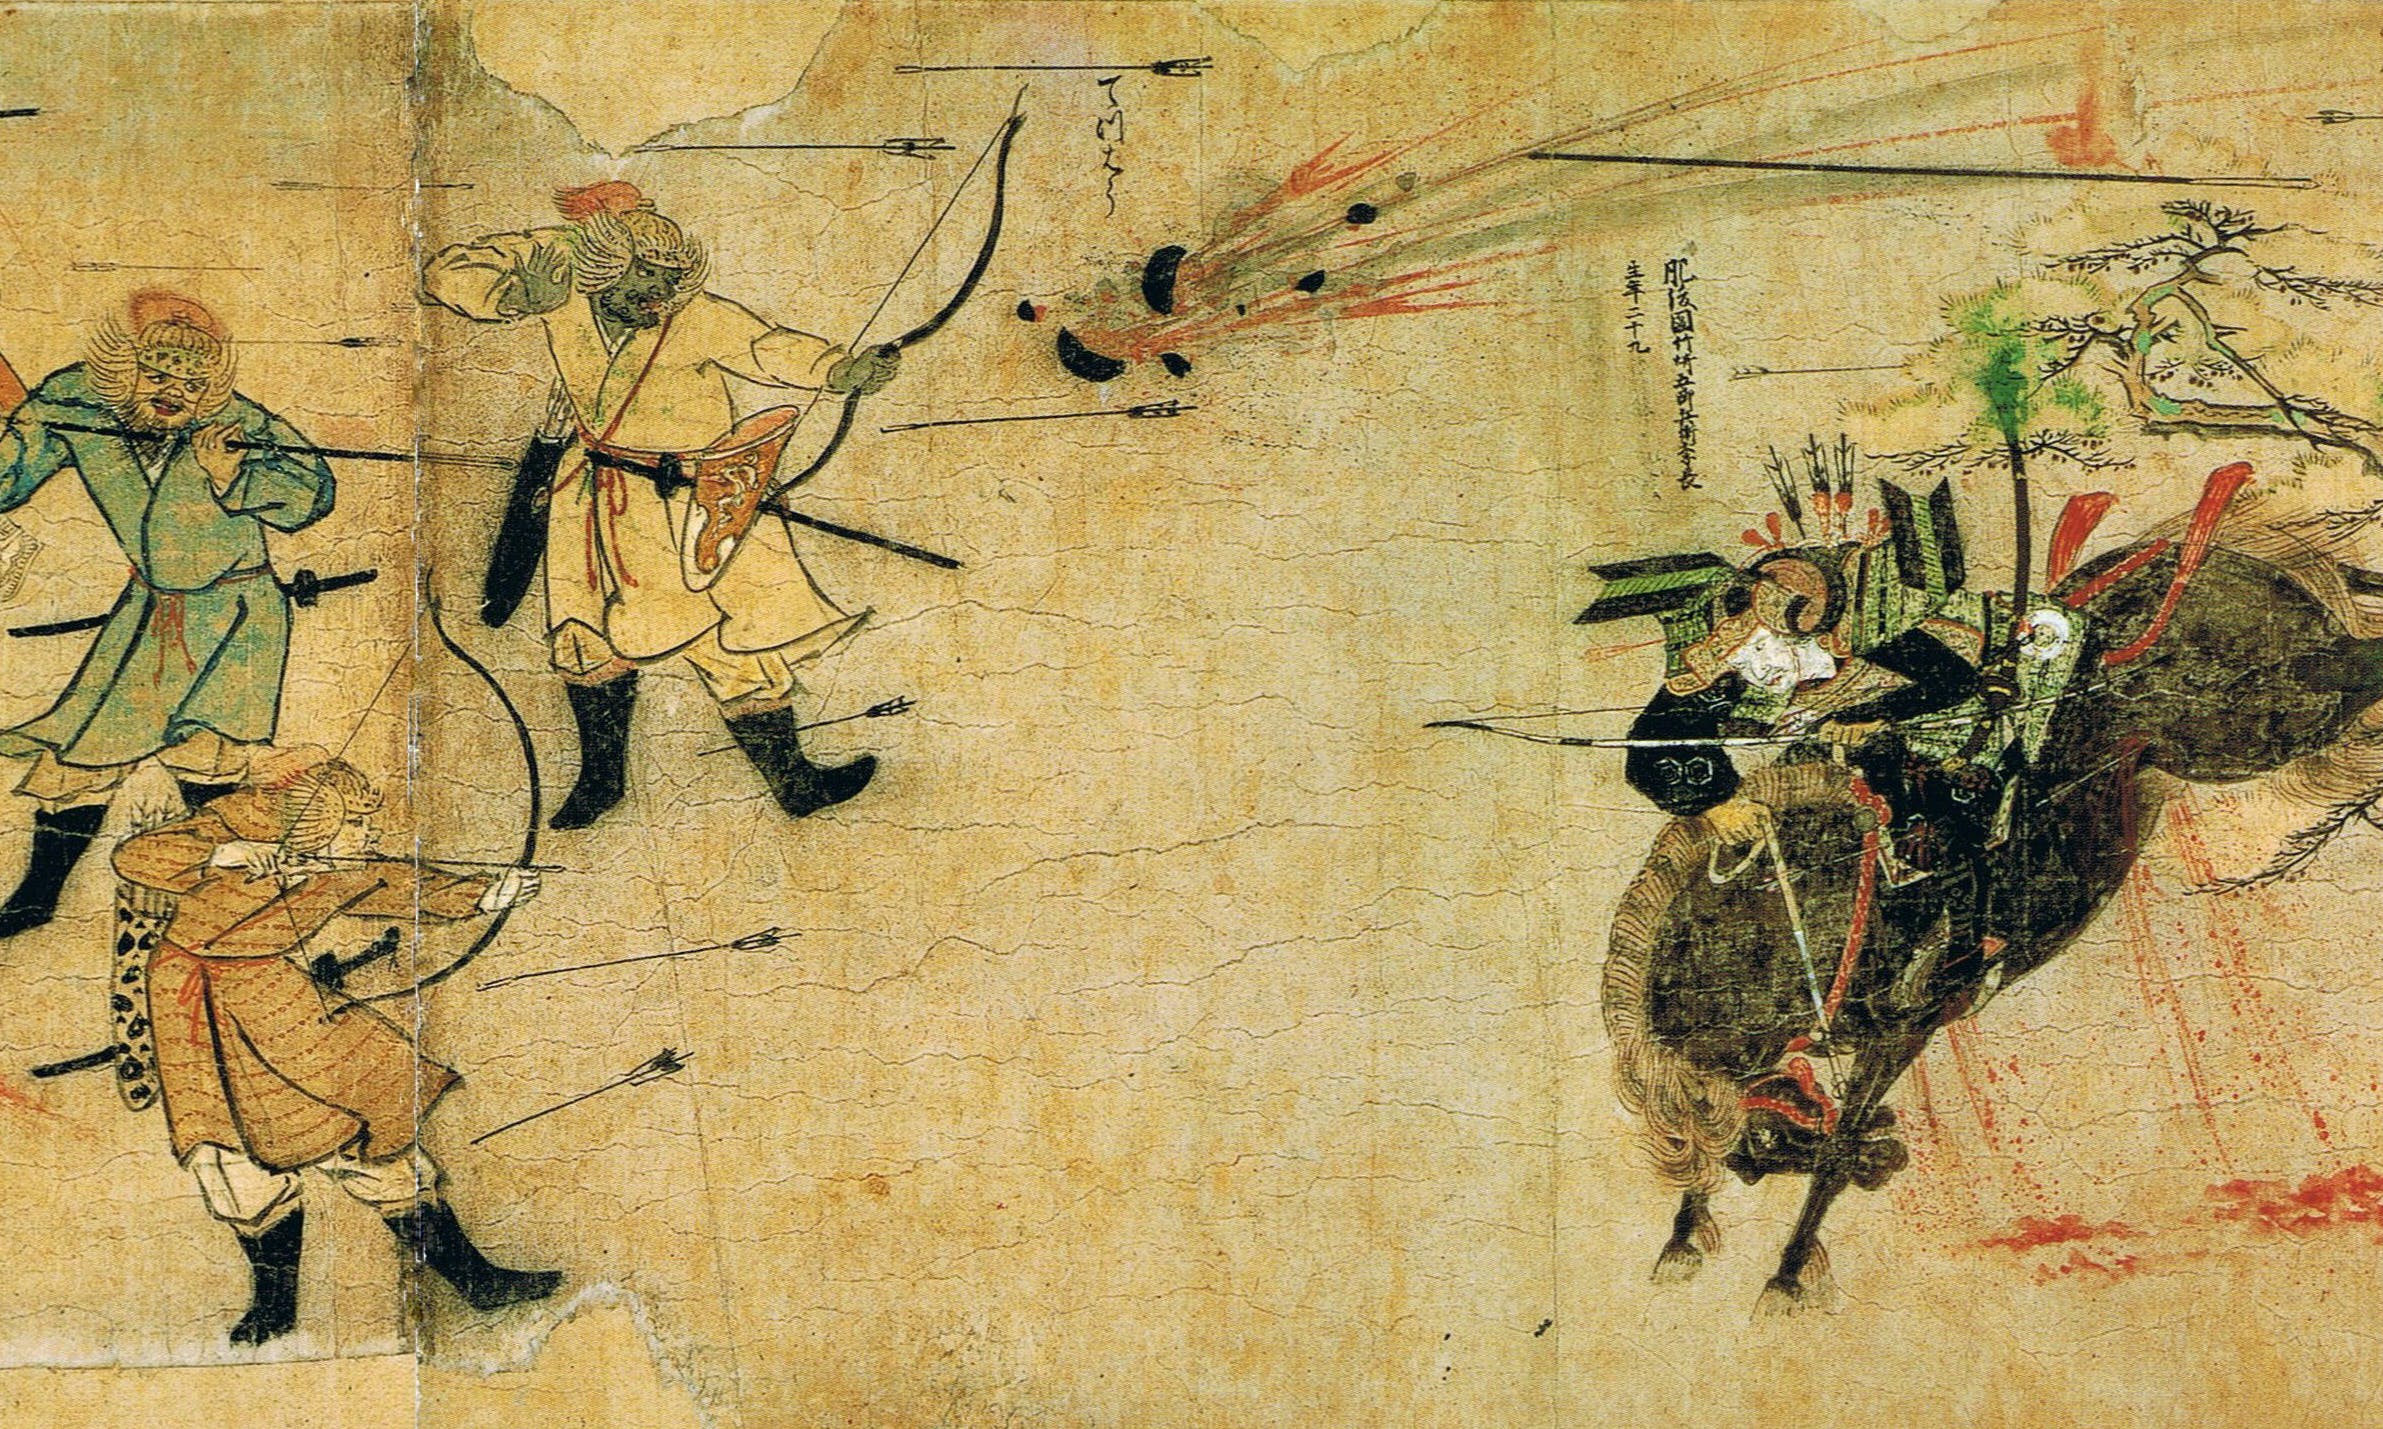 藏在地形裡的日本史》：蒙古入侵日本失敗的原因是「爛泥」？ - The News Lens 關鍵評論網